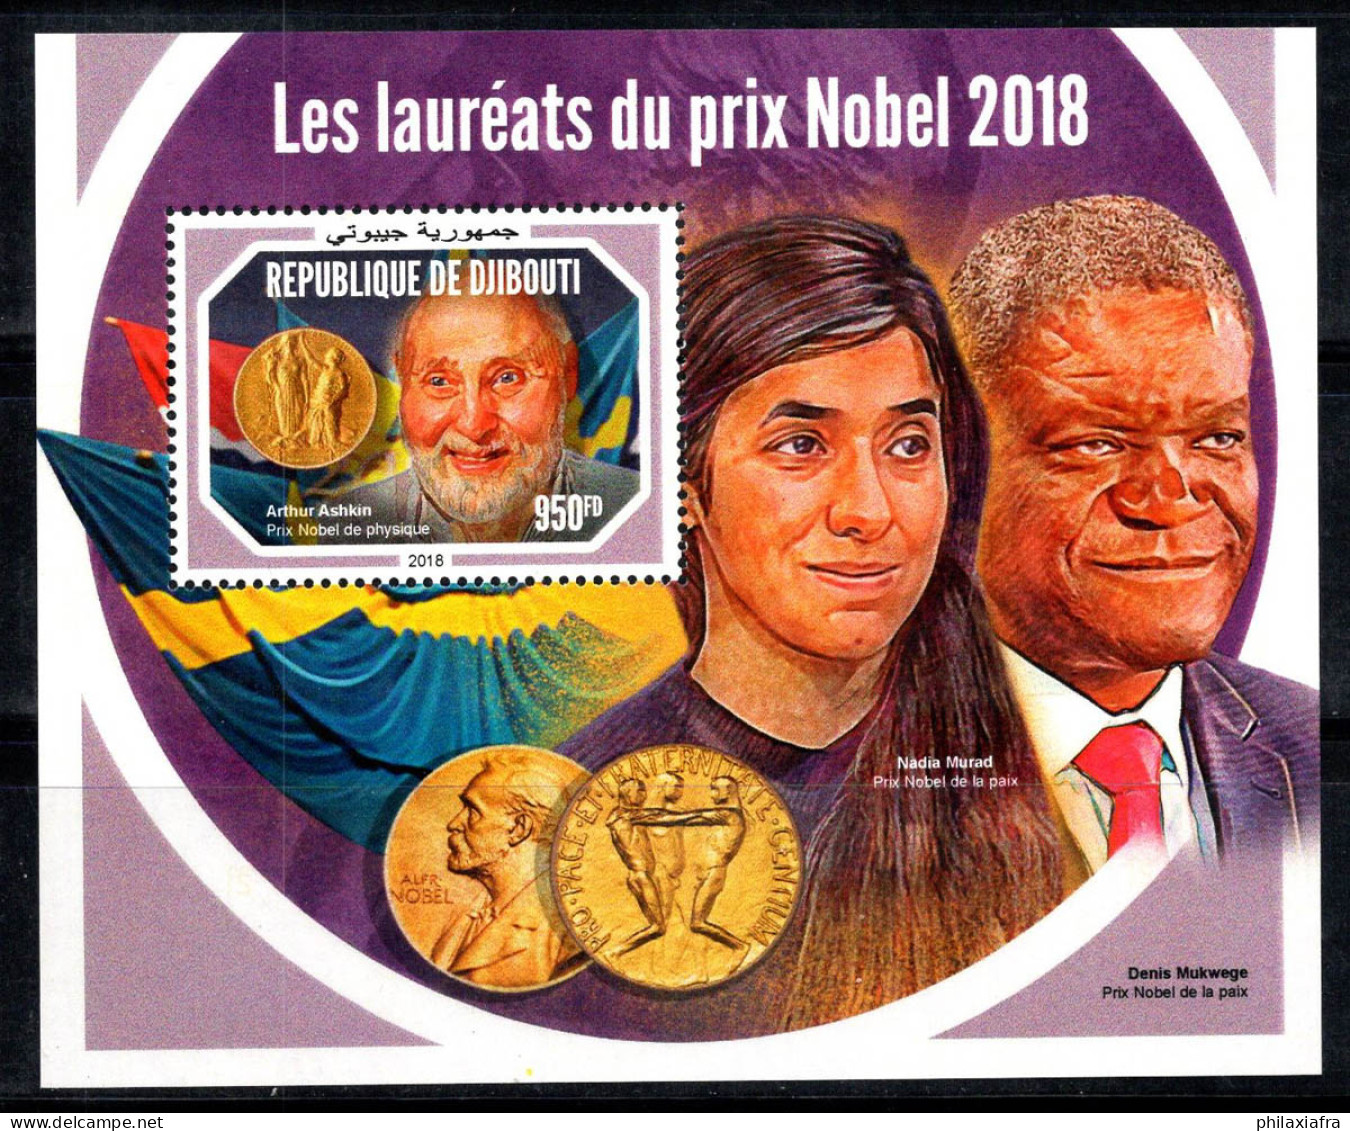 Djibouti 2018 Mi. Bl.1261 Bloc Feuillet 100% Neuf ** 950 Fr, Prix Nobel - Yibuti (1977-...)